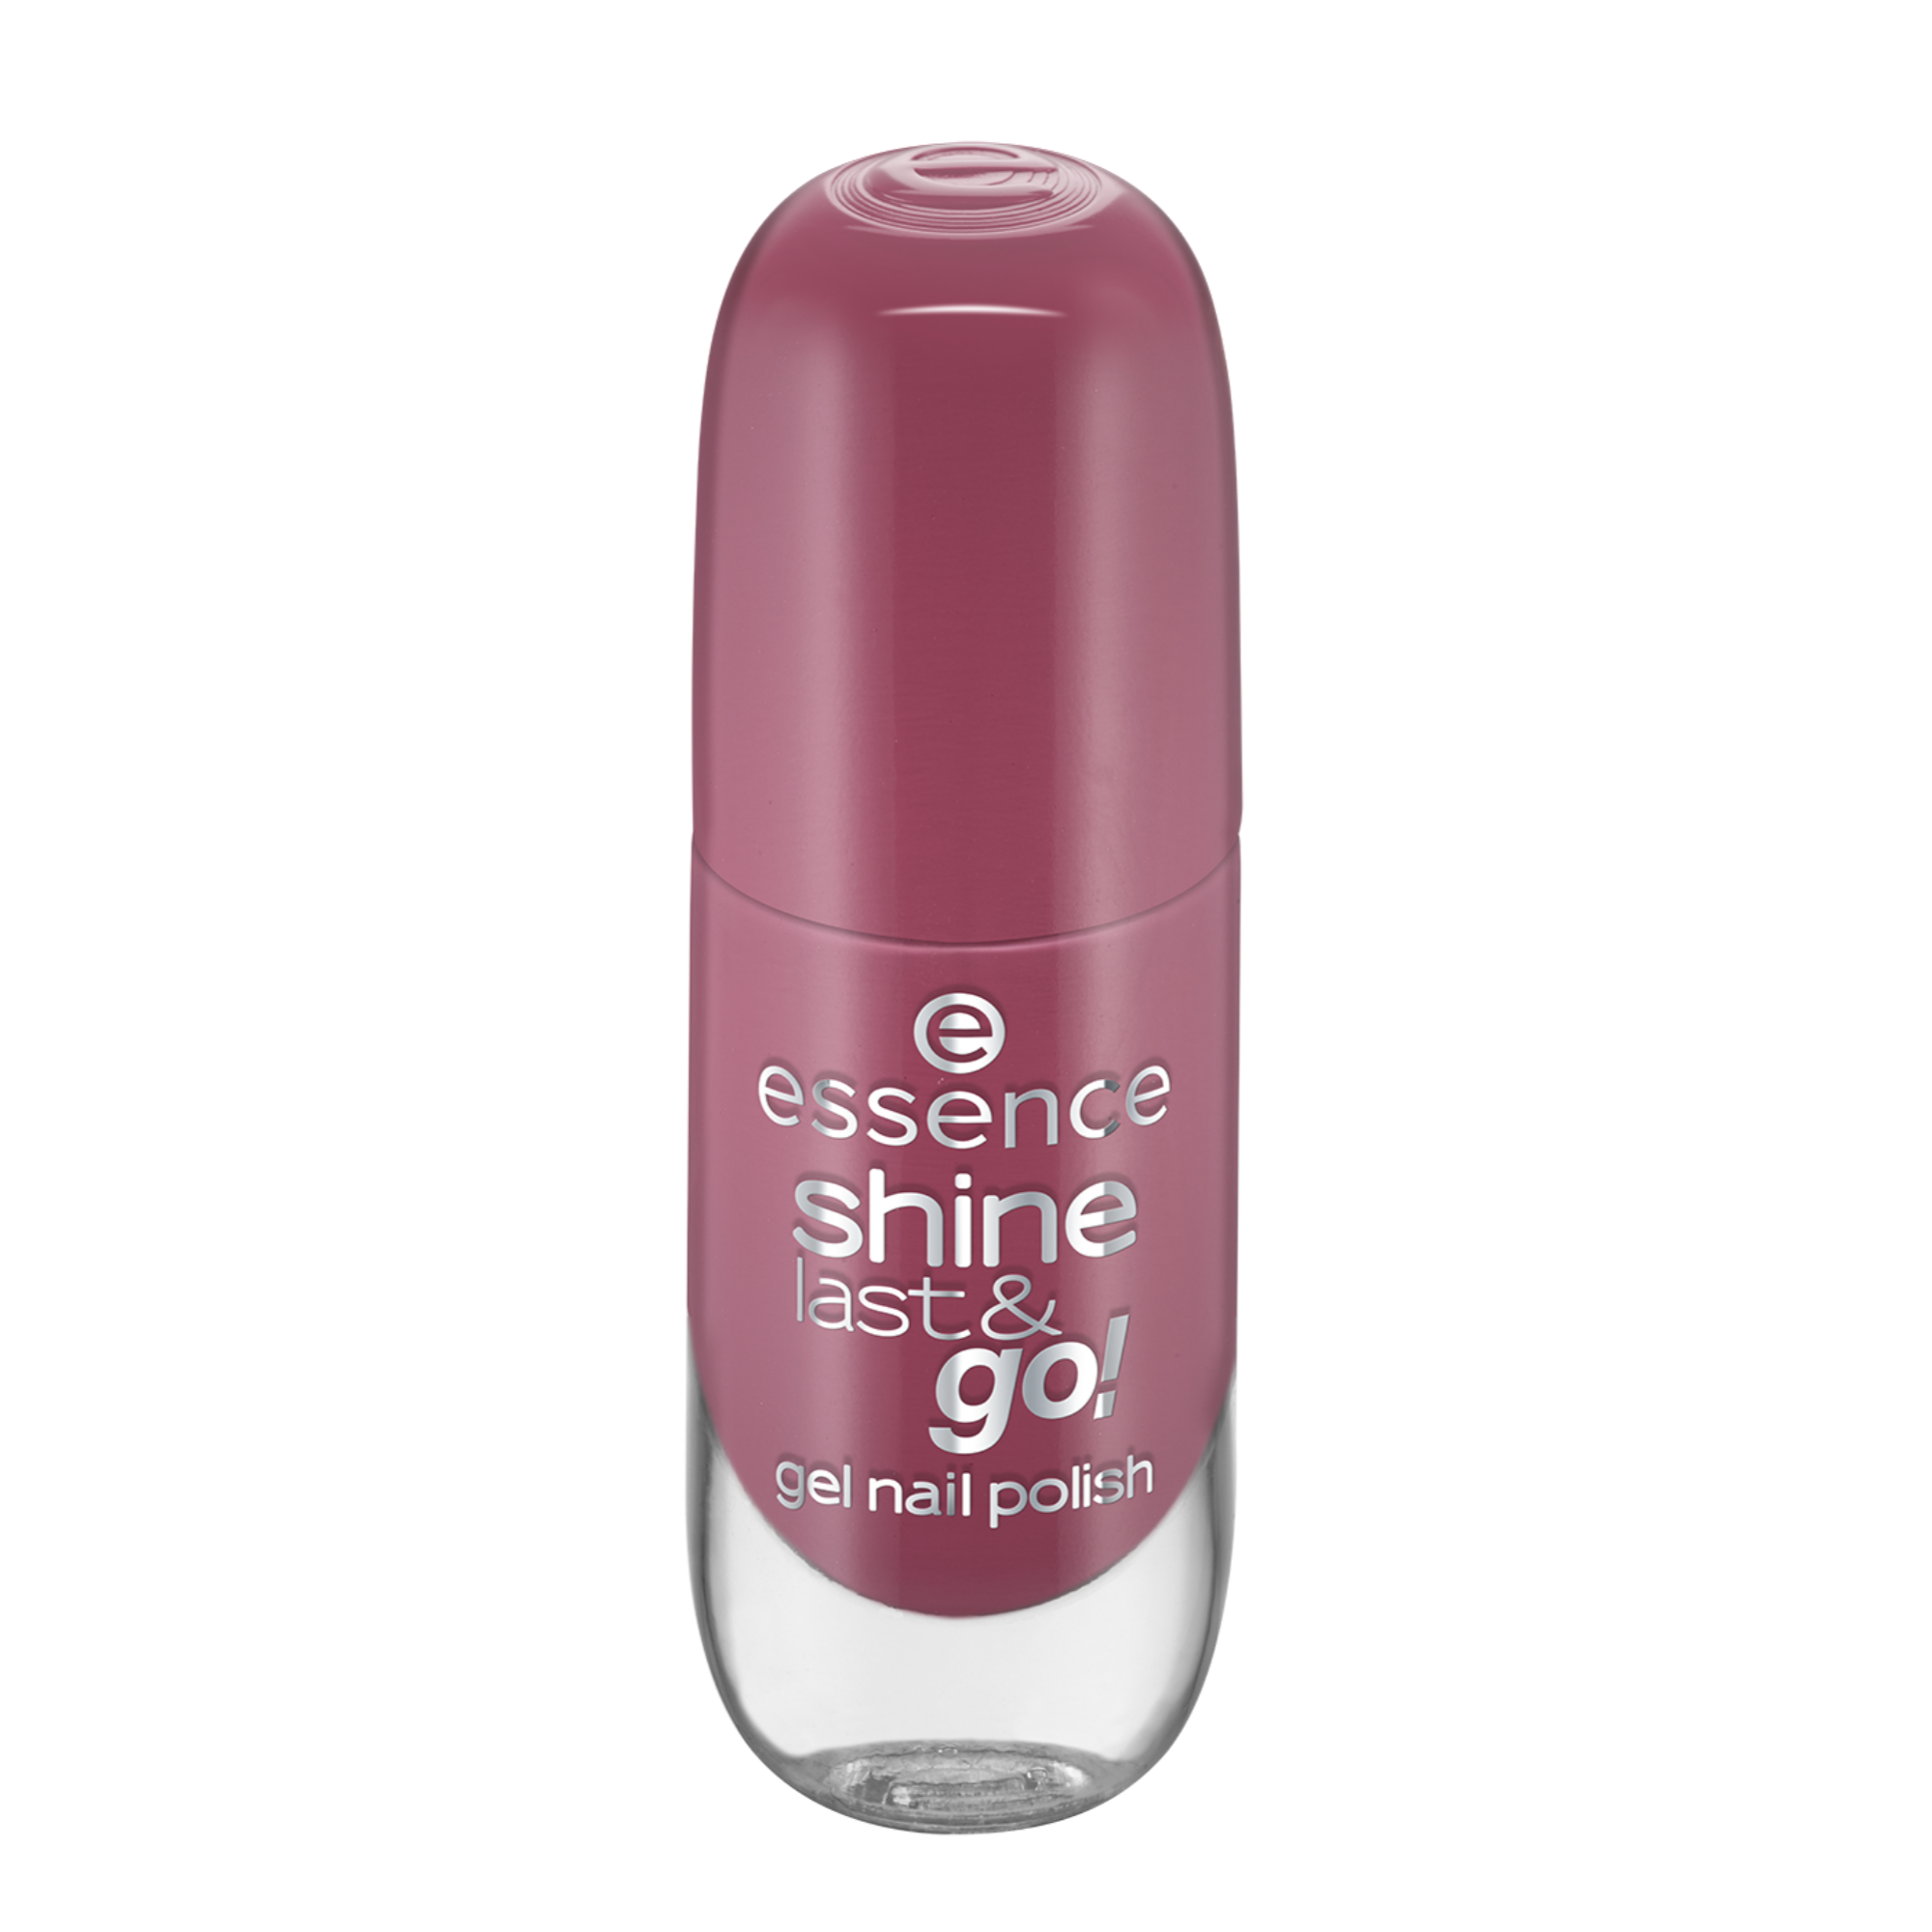 shine last & go! gel nail polish